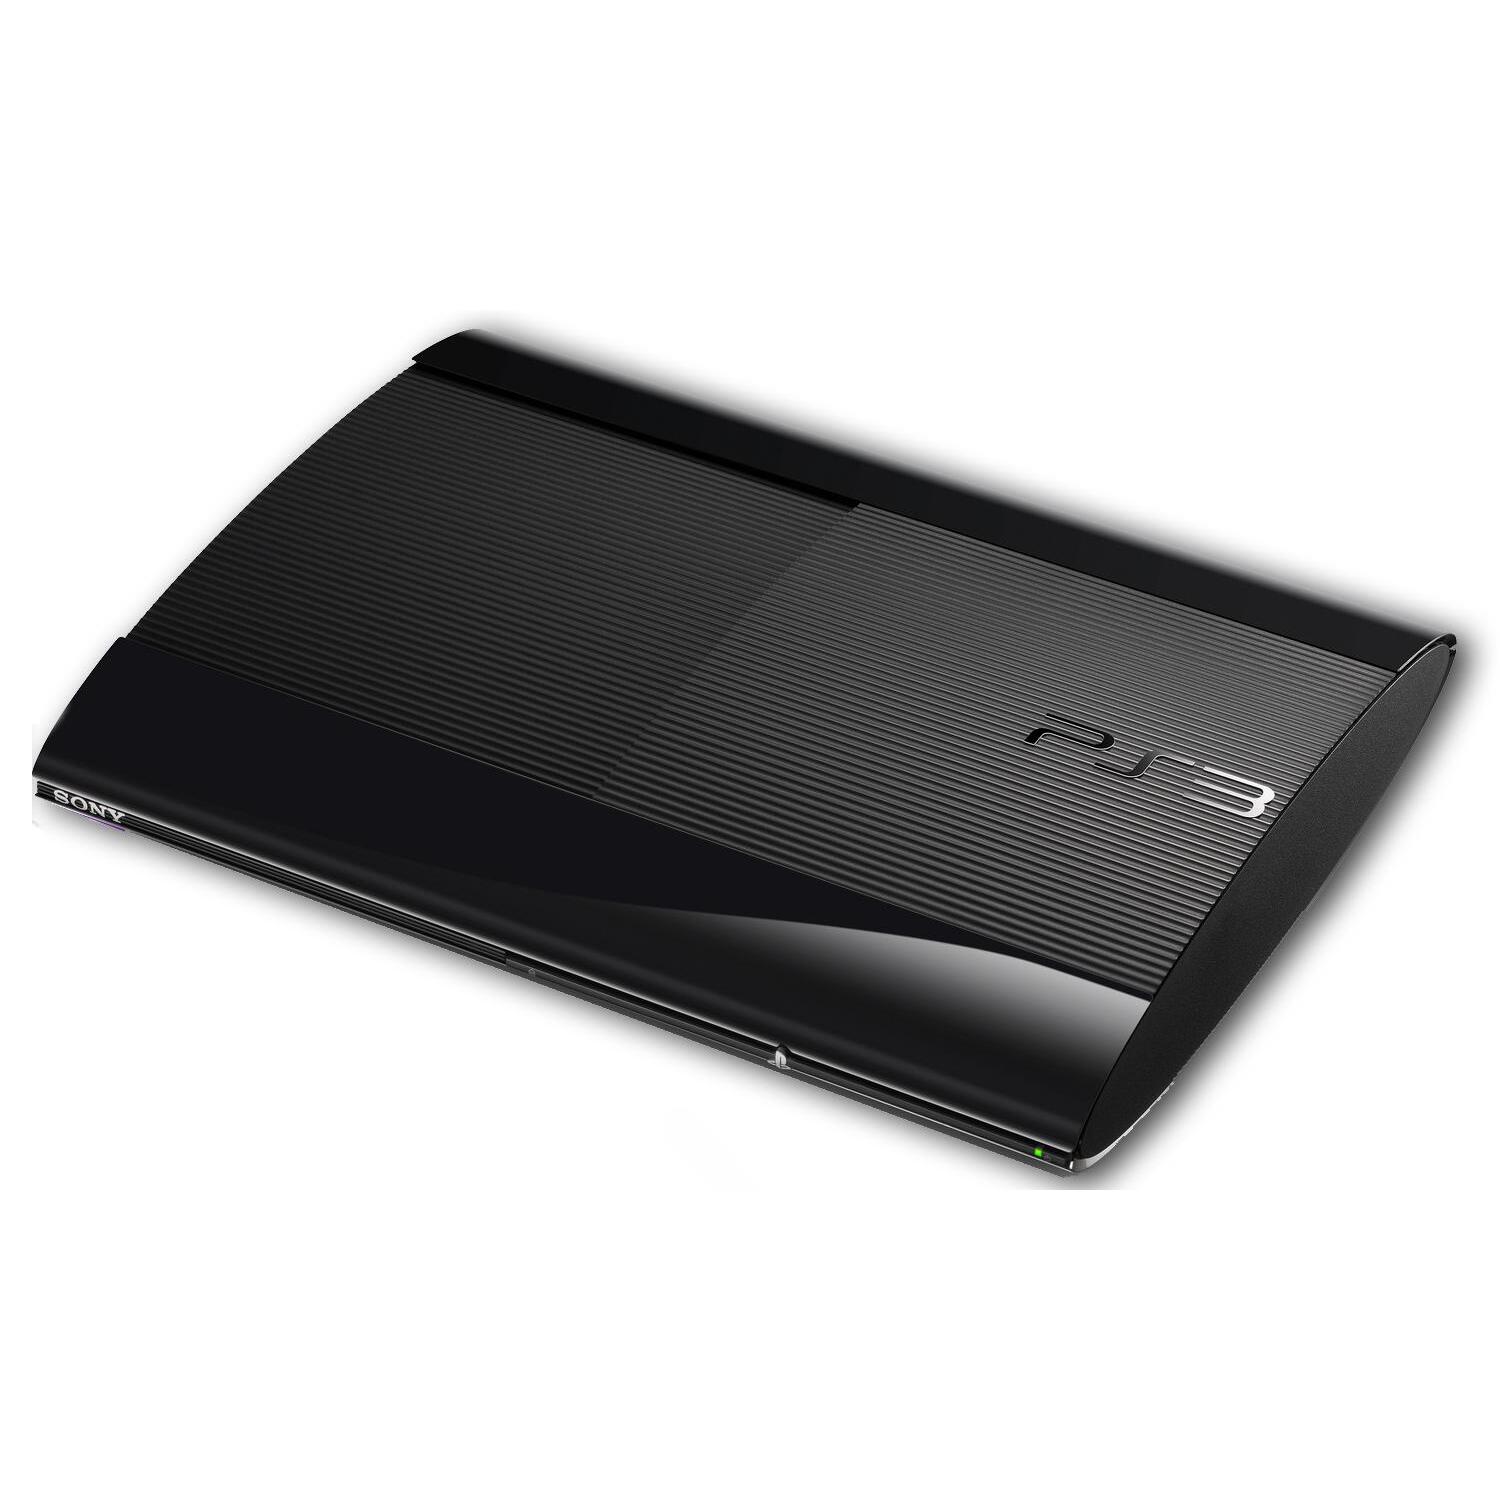 prachtig kapsel Verzoekschrift PS3 Console: Super Slim (Nieuwste model) (PS3) kopen - €75